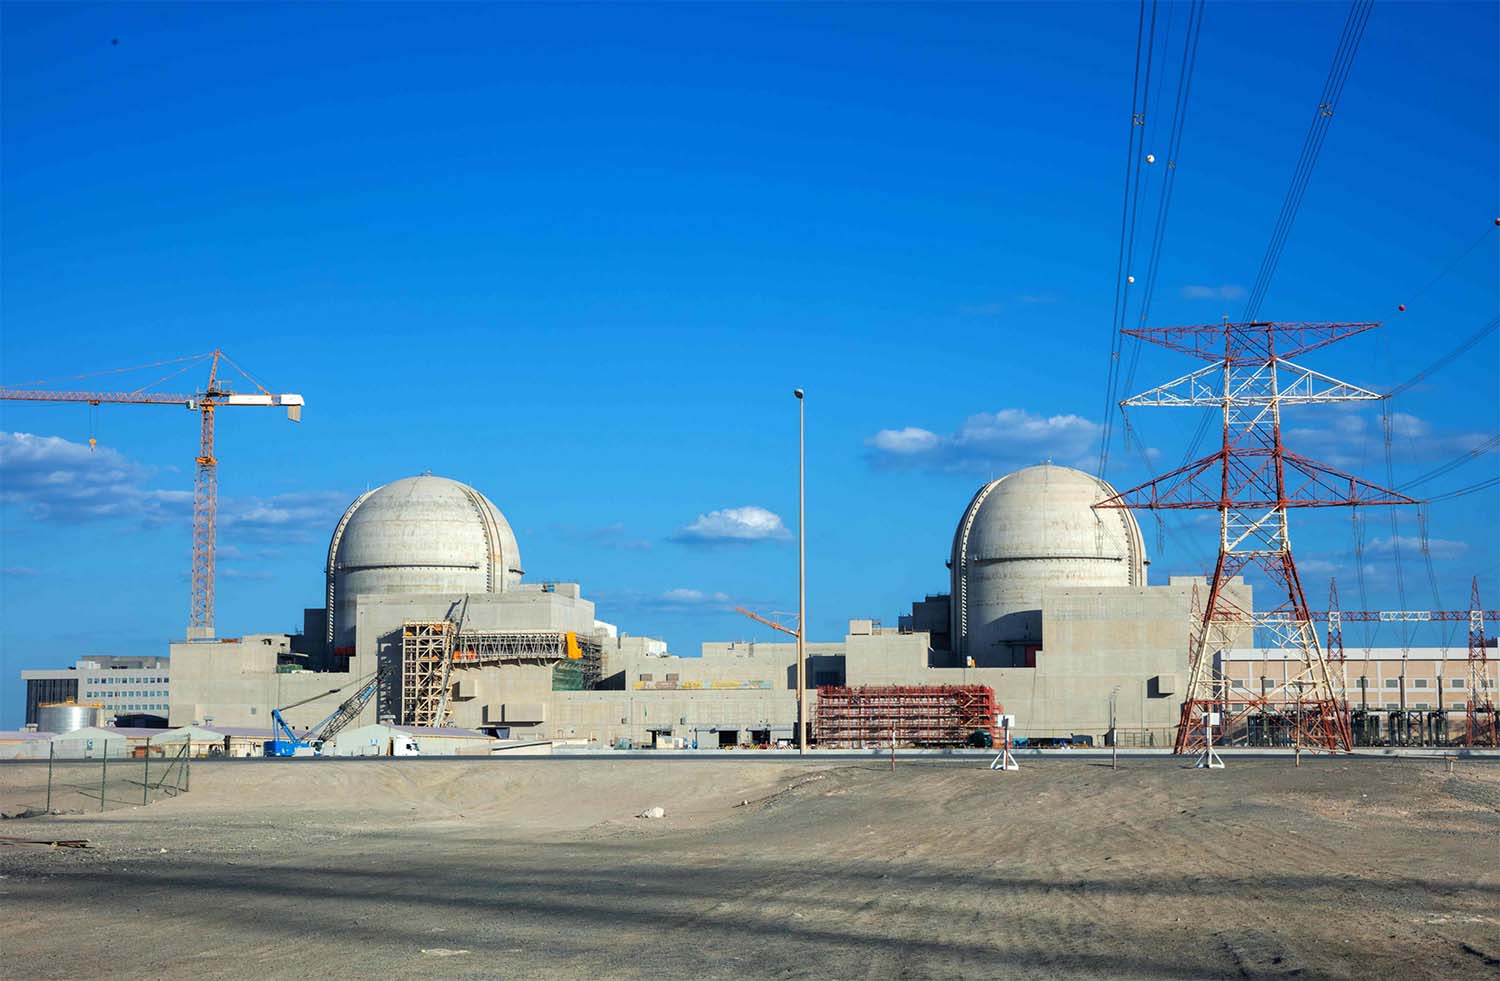 Barakah Nuclear Power Plant 